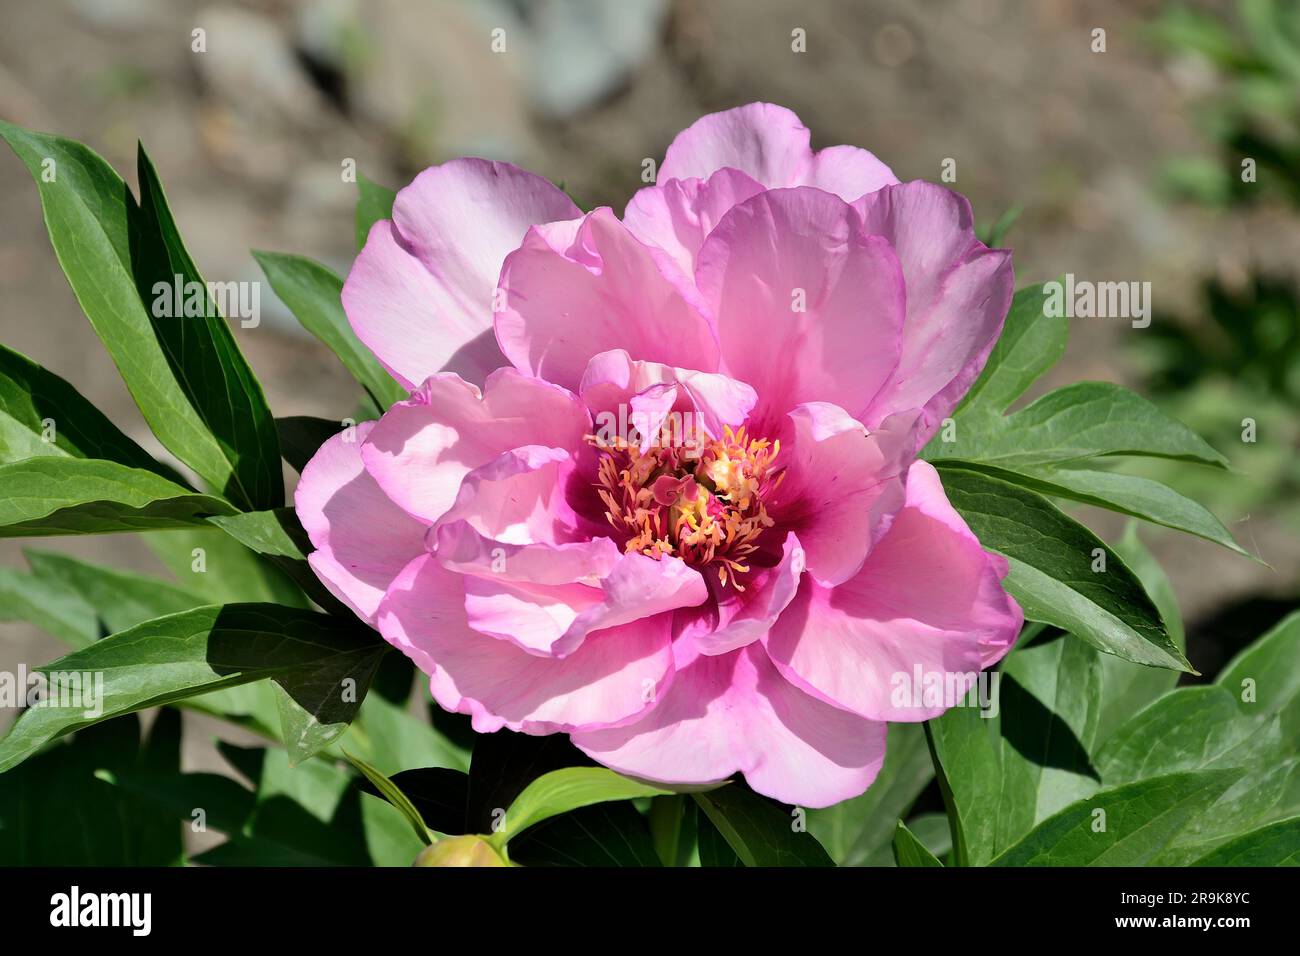 Variété de fleurs de pivoine de couleur lilas gracieux (Paeonia Itoh première arrivée) dans le jardin d'été. Plante vivace brousse avec floraison précoce et longue Banque D'Images